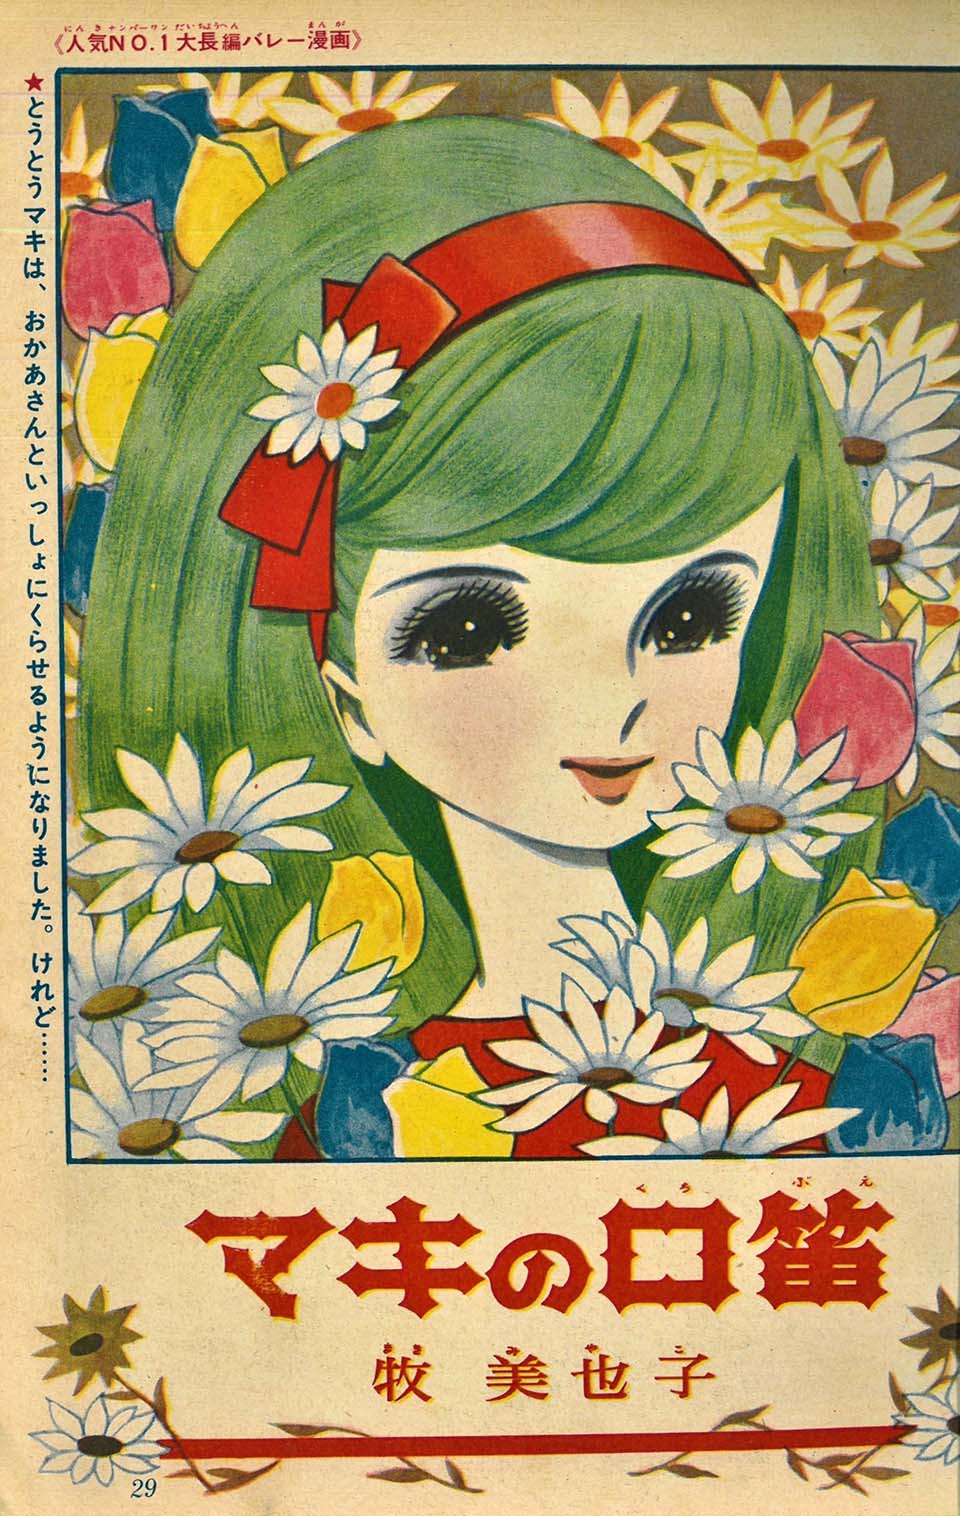 牧美也子「マキの口笛」『りぼん』1963年3月号